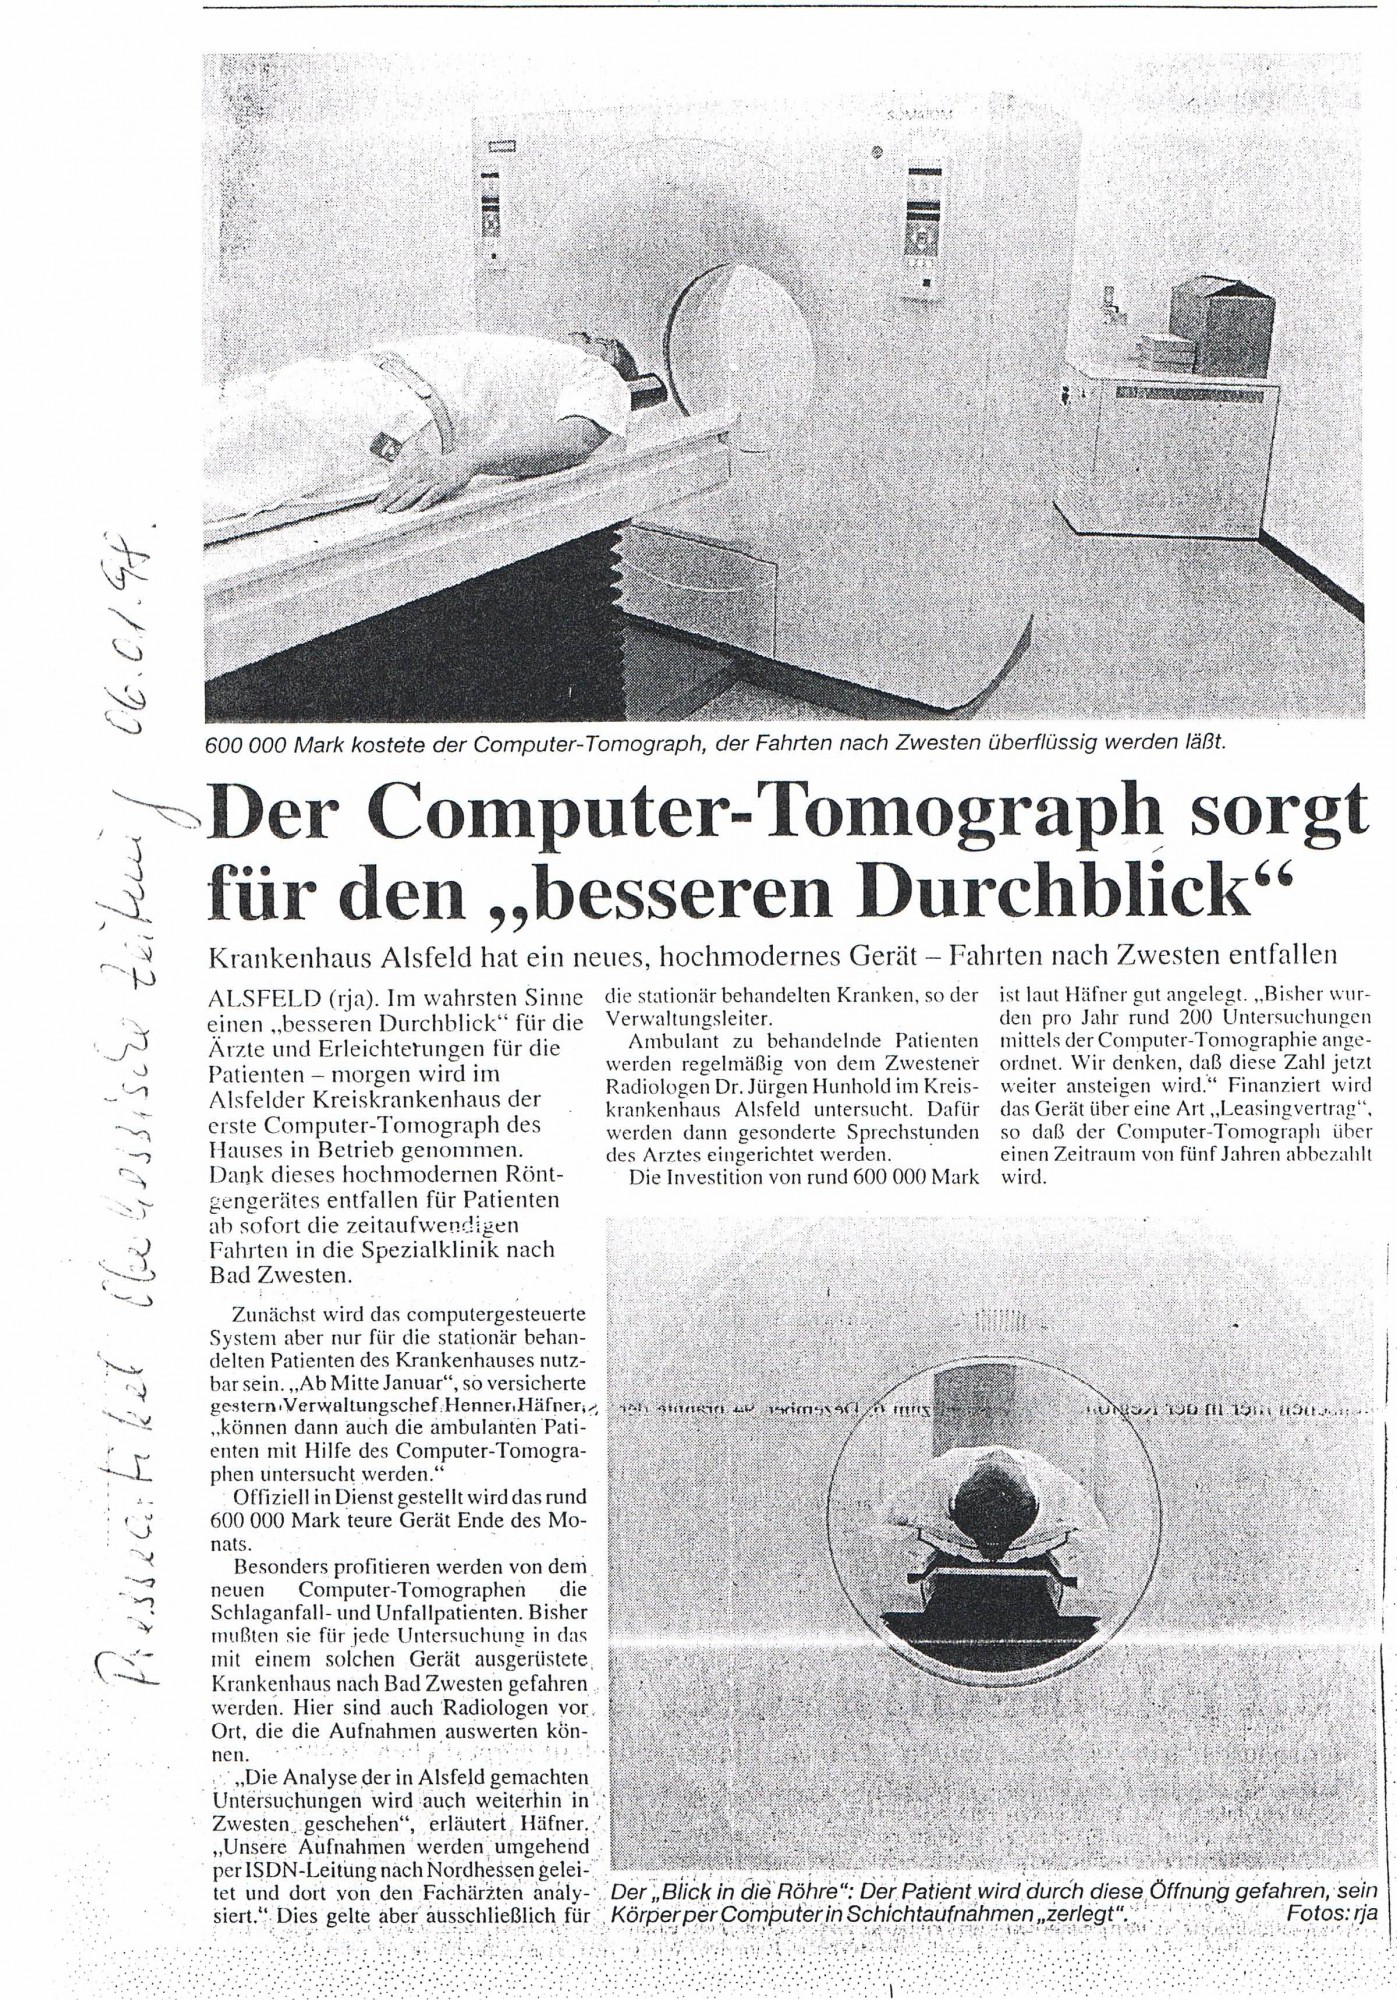 1998-01-06 Der Computer-Tomograph sorgt für den besseren Durchblick-001